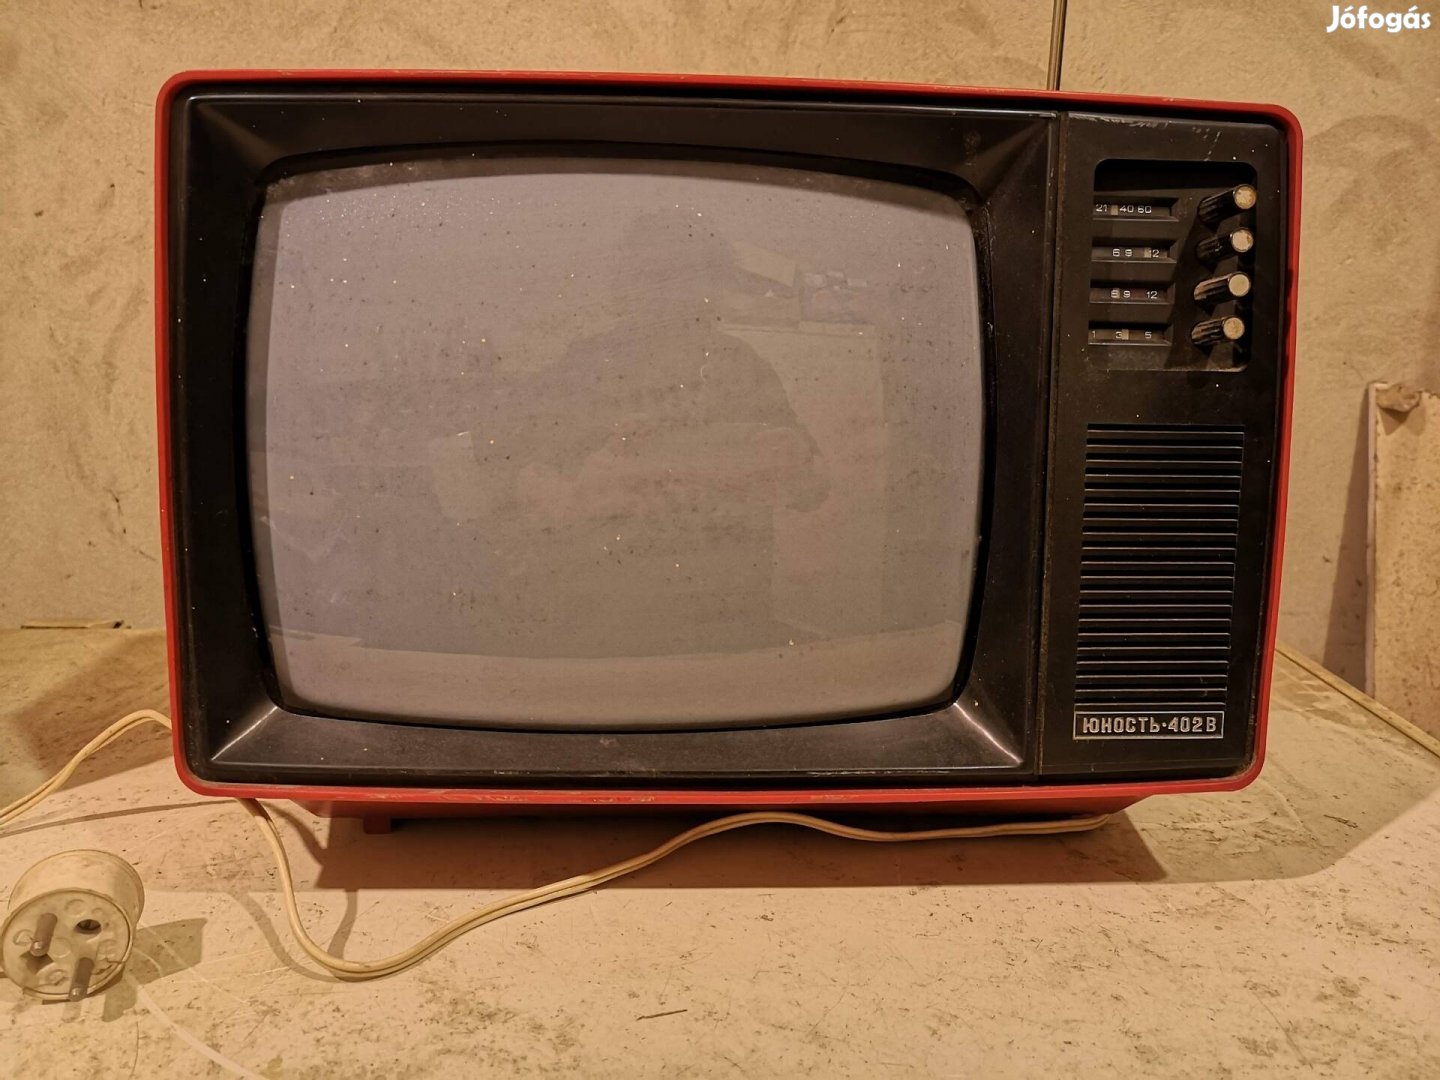 Retro, vintage piros Junoszt 402BC televízió